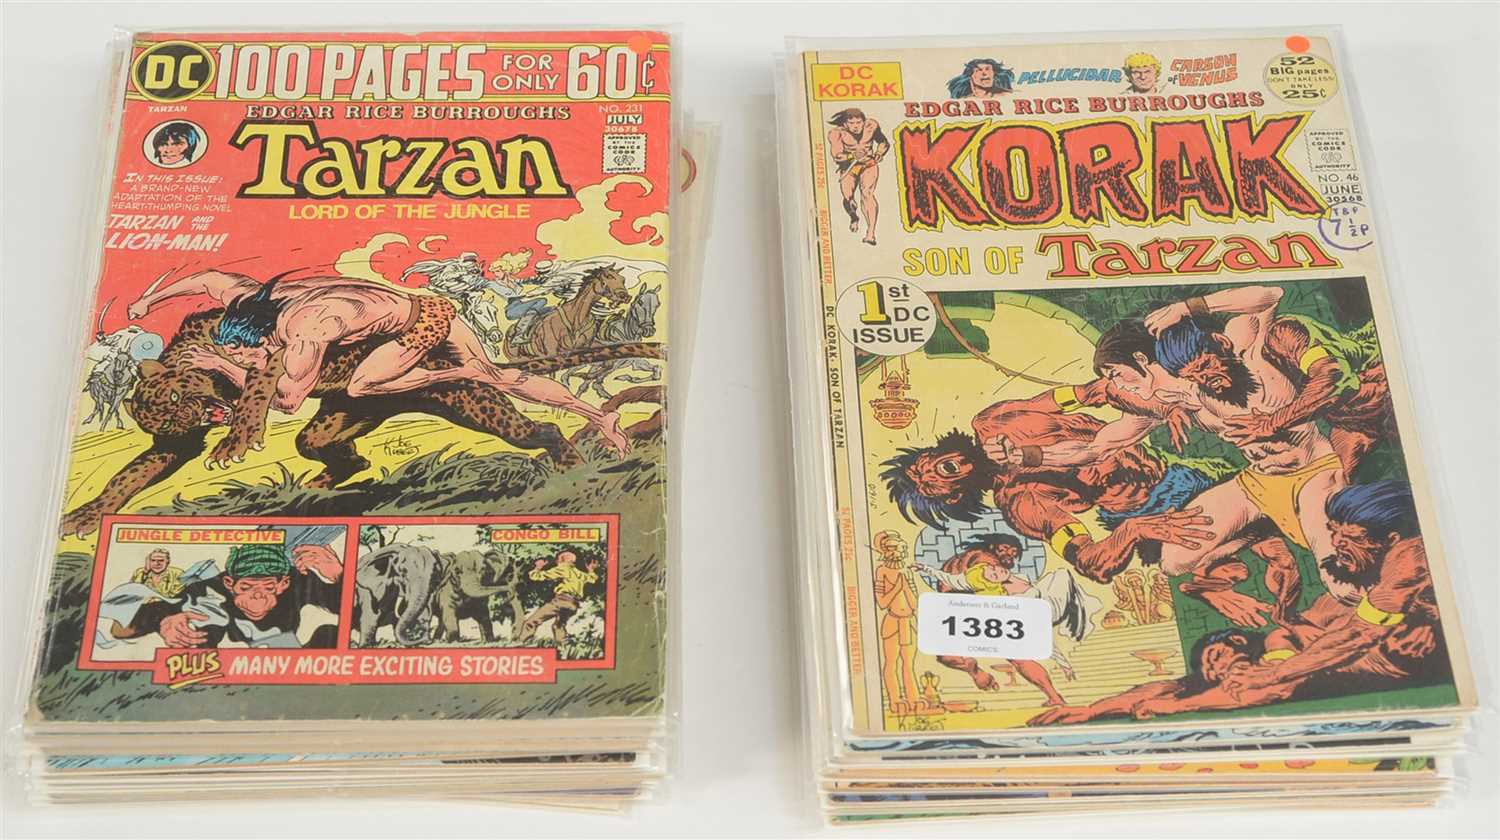 Lot 1383 - Korak Son of Tarzan and other Comics